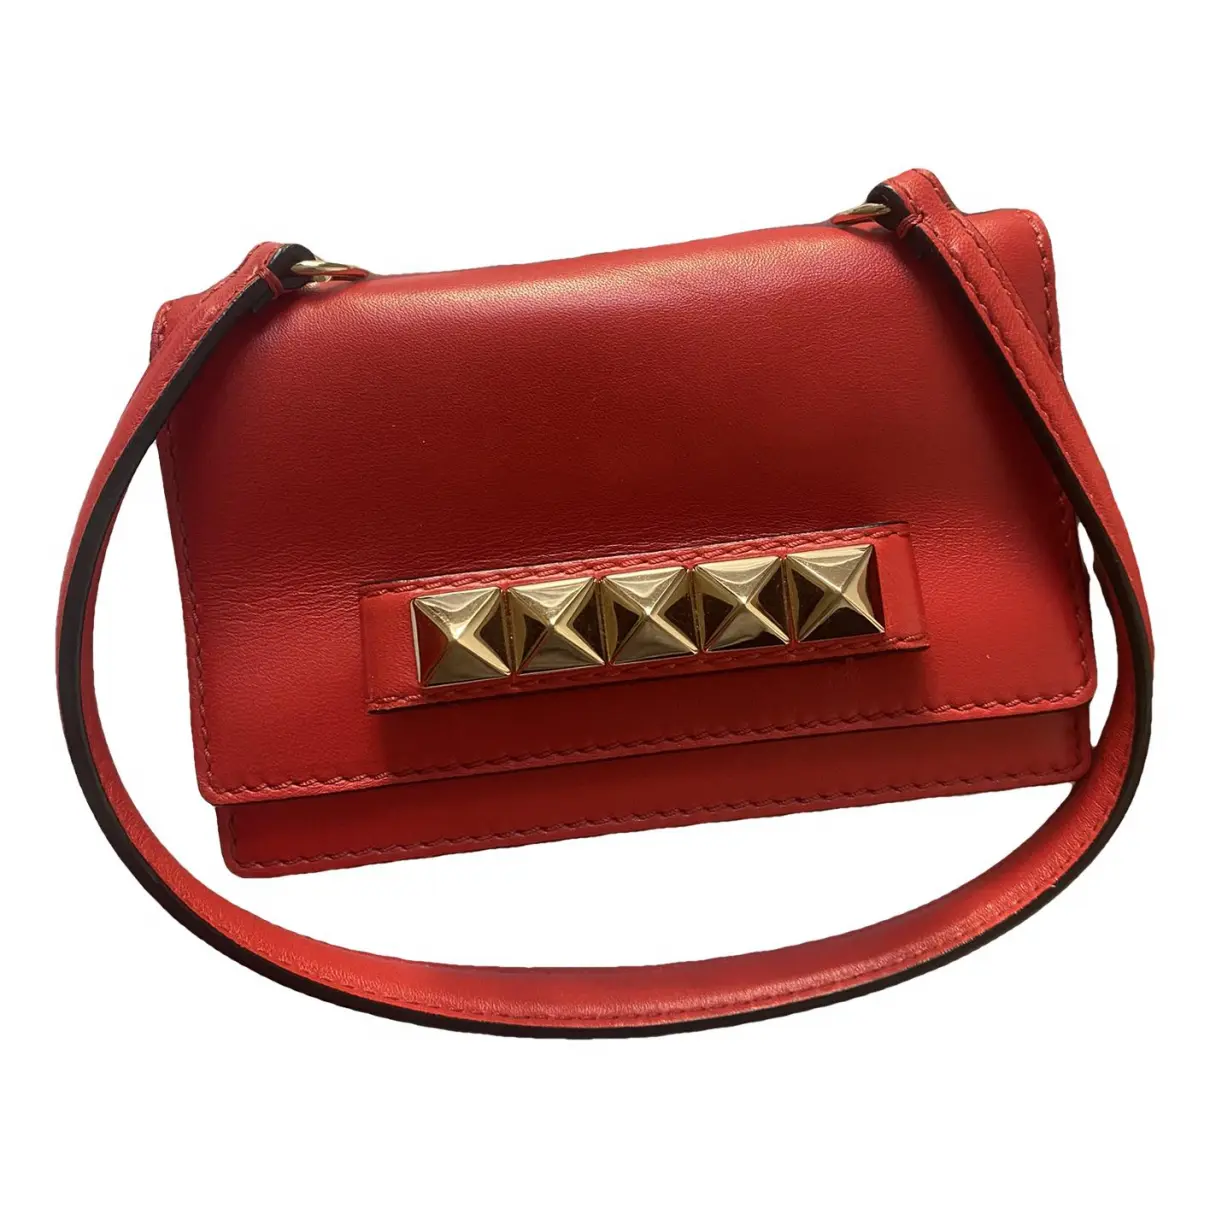 Vavavoom leather handbag